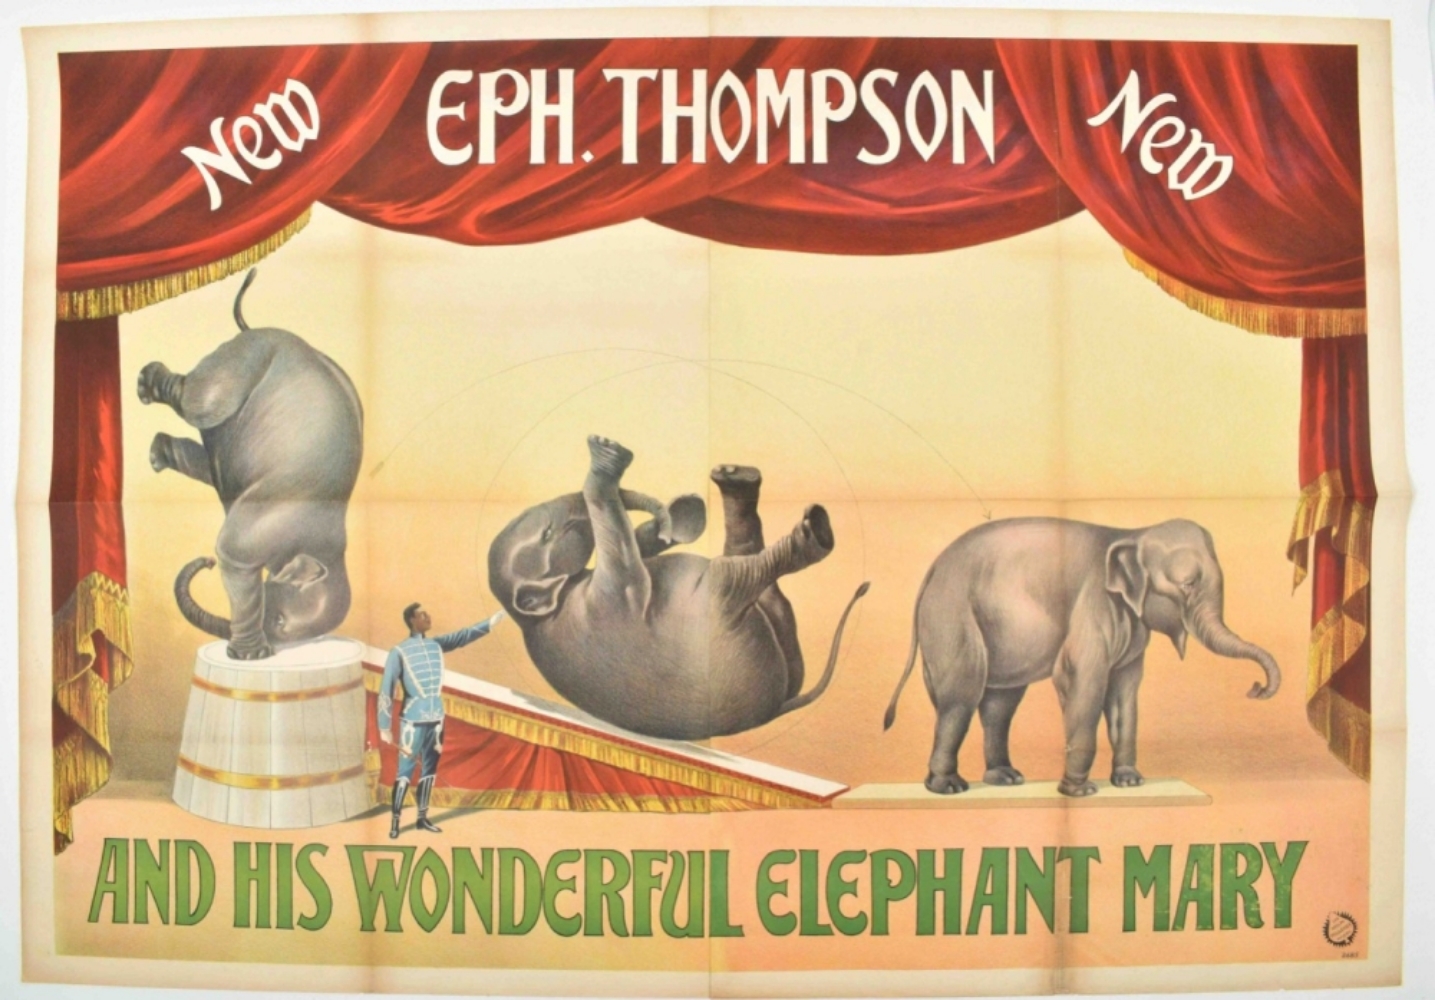 [Elephants] Eph. Thompson and his wonderful elephant Mary - Image 8 of 8